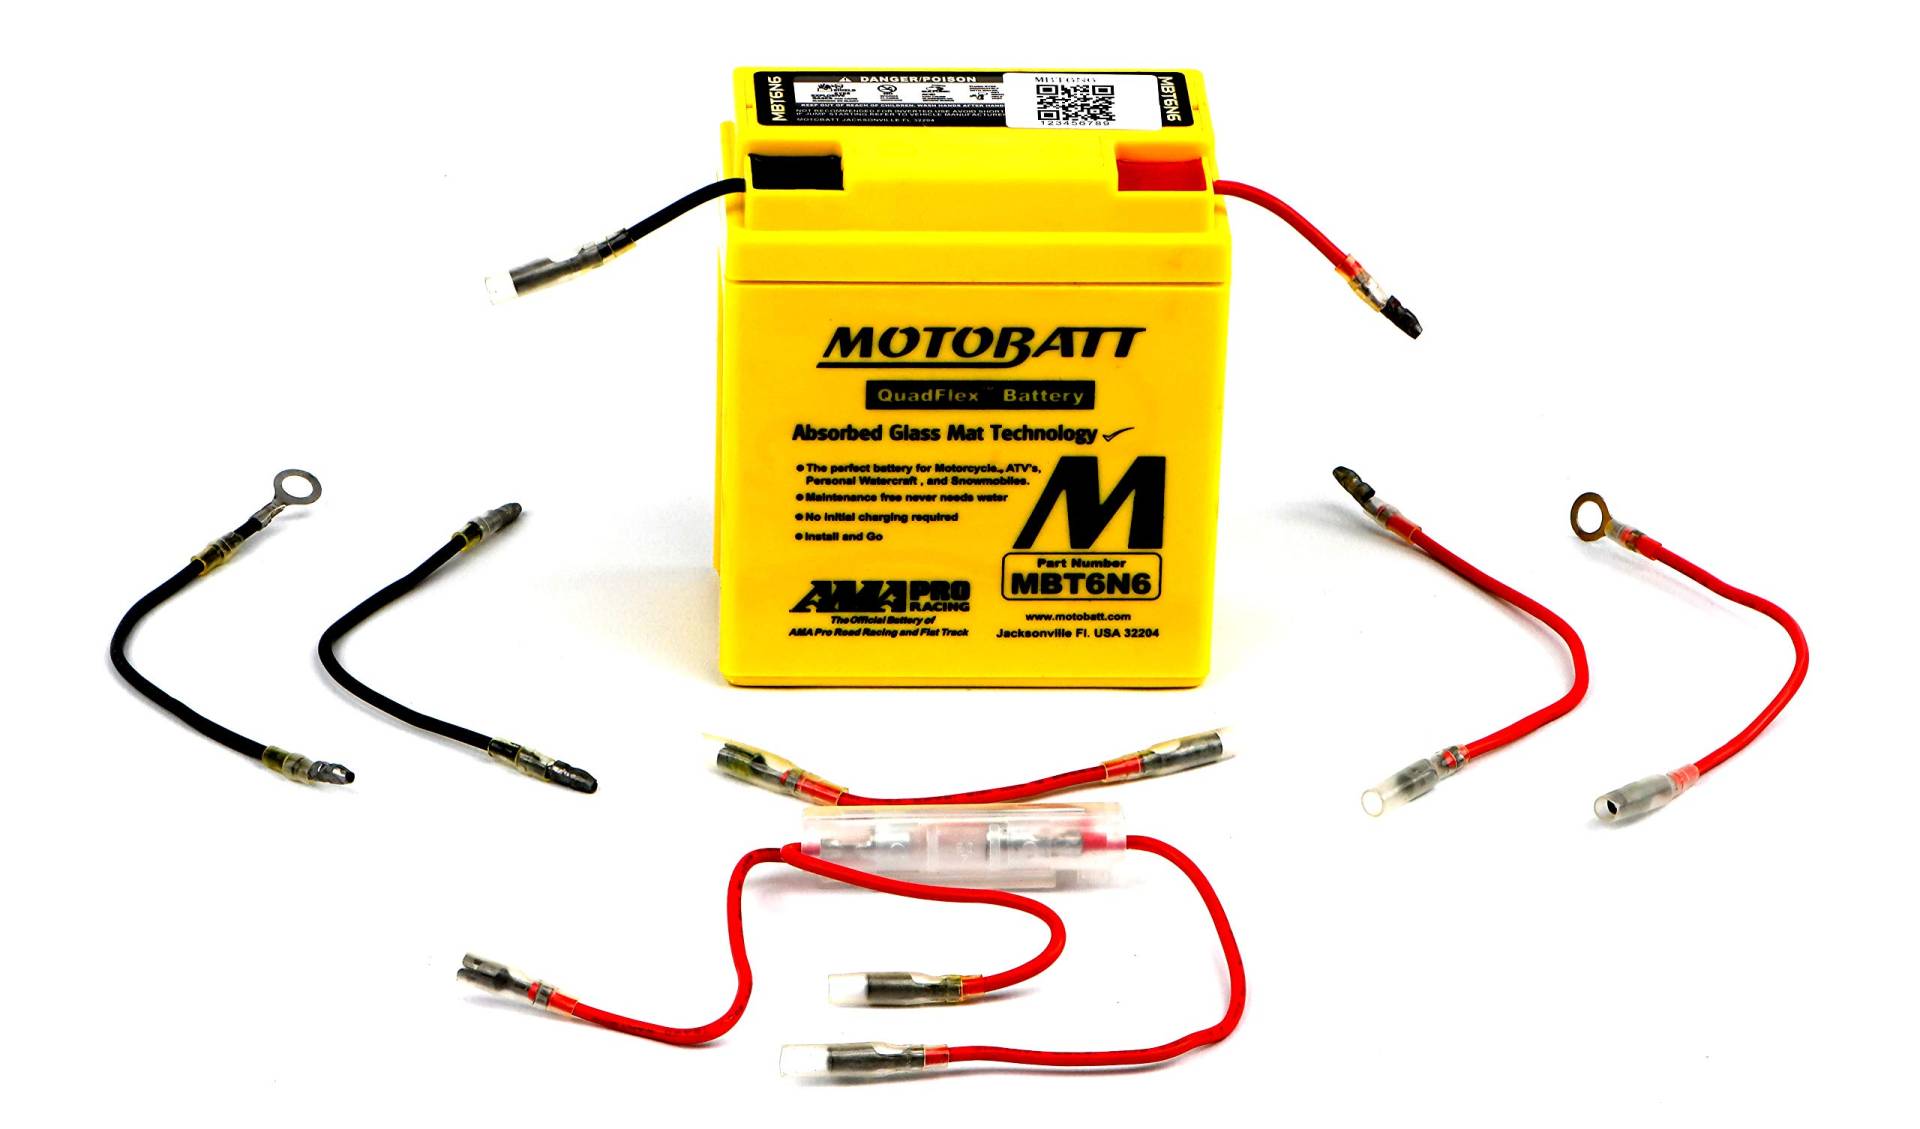 Motobatt MBT6N6 AGM Batterie gelb von MOTOBATT